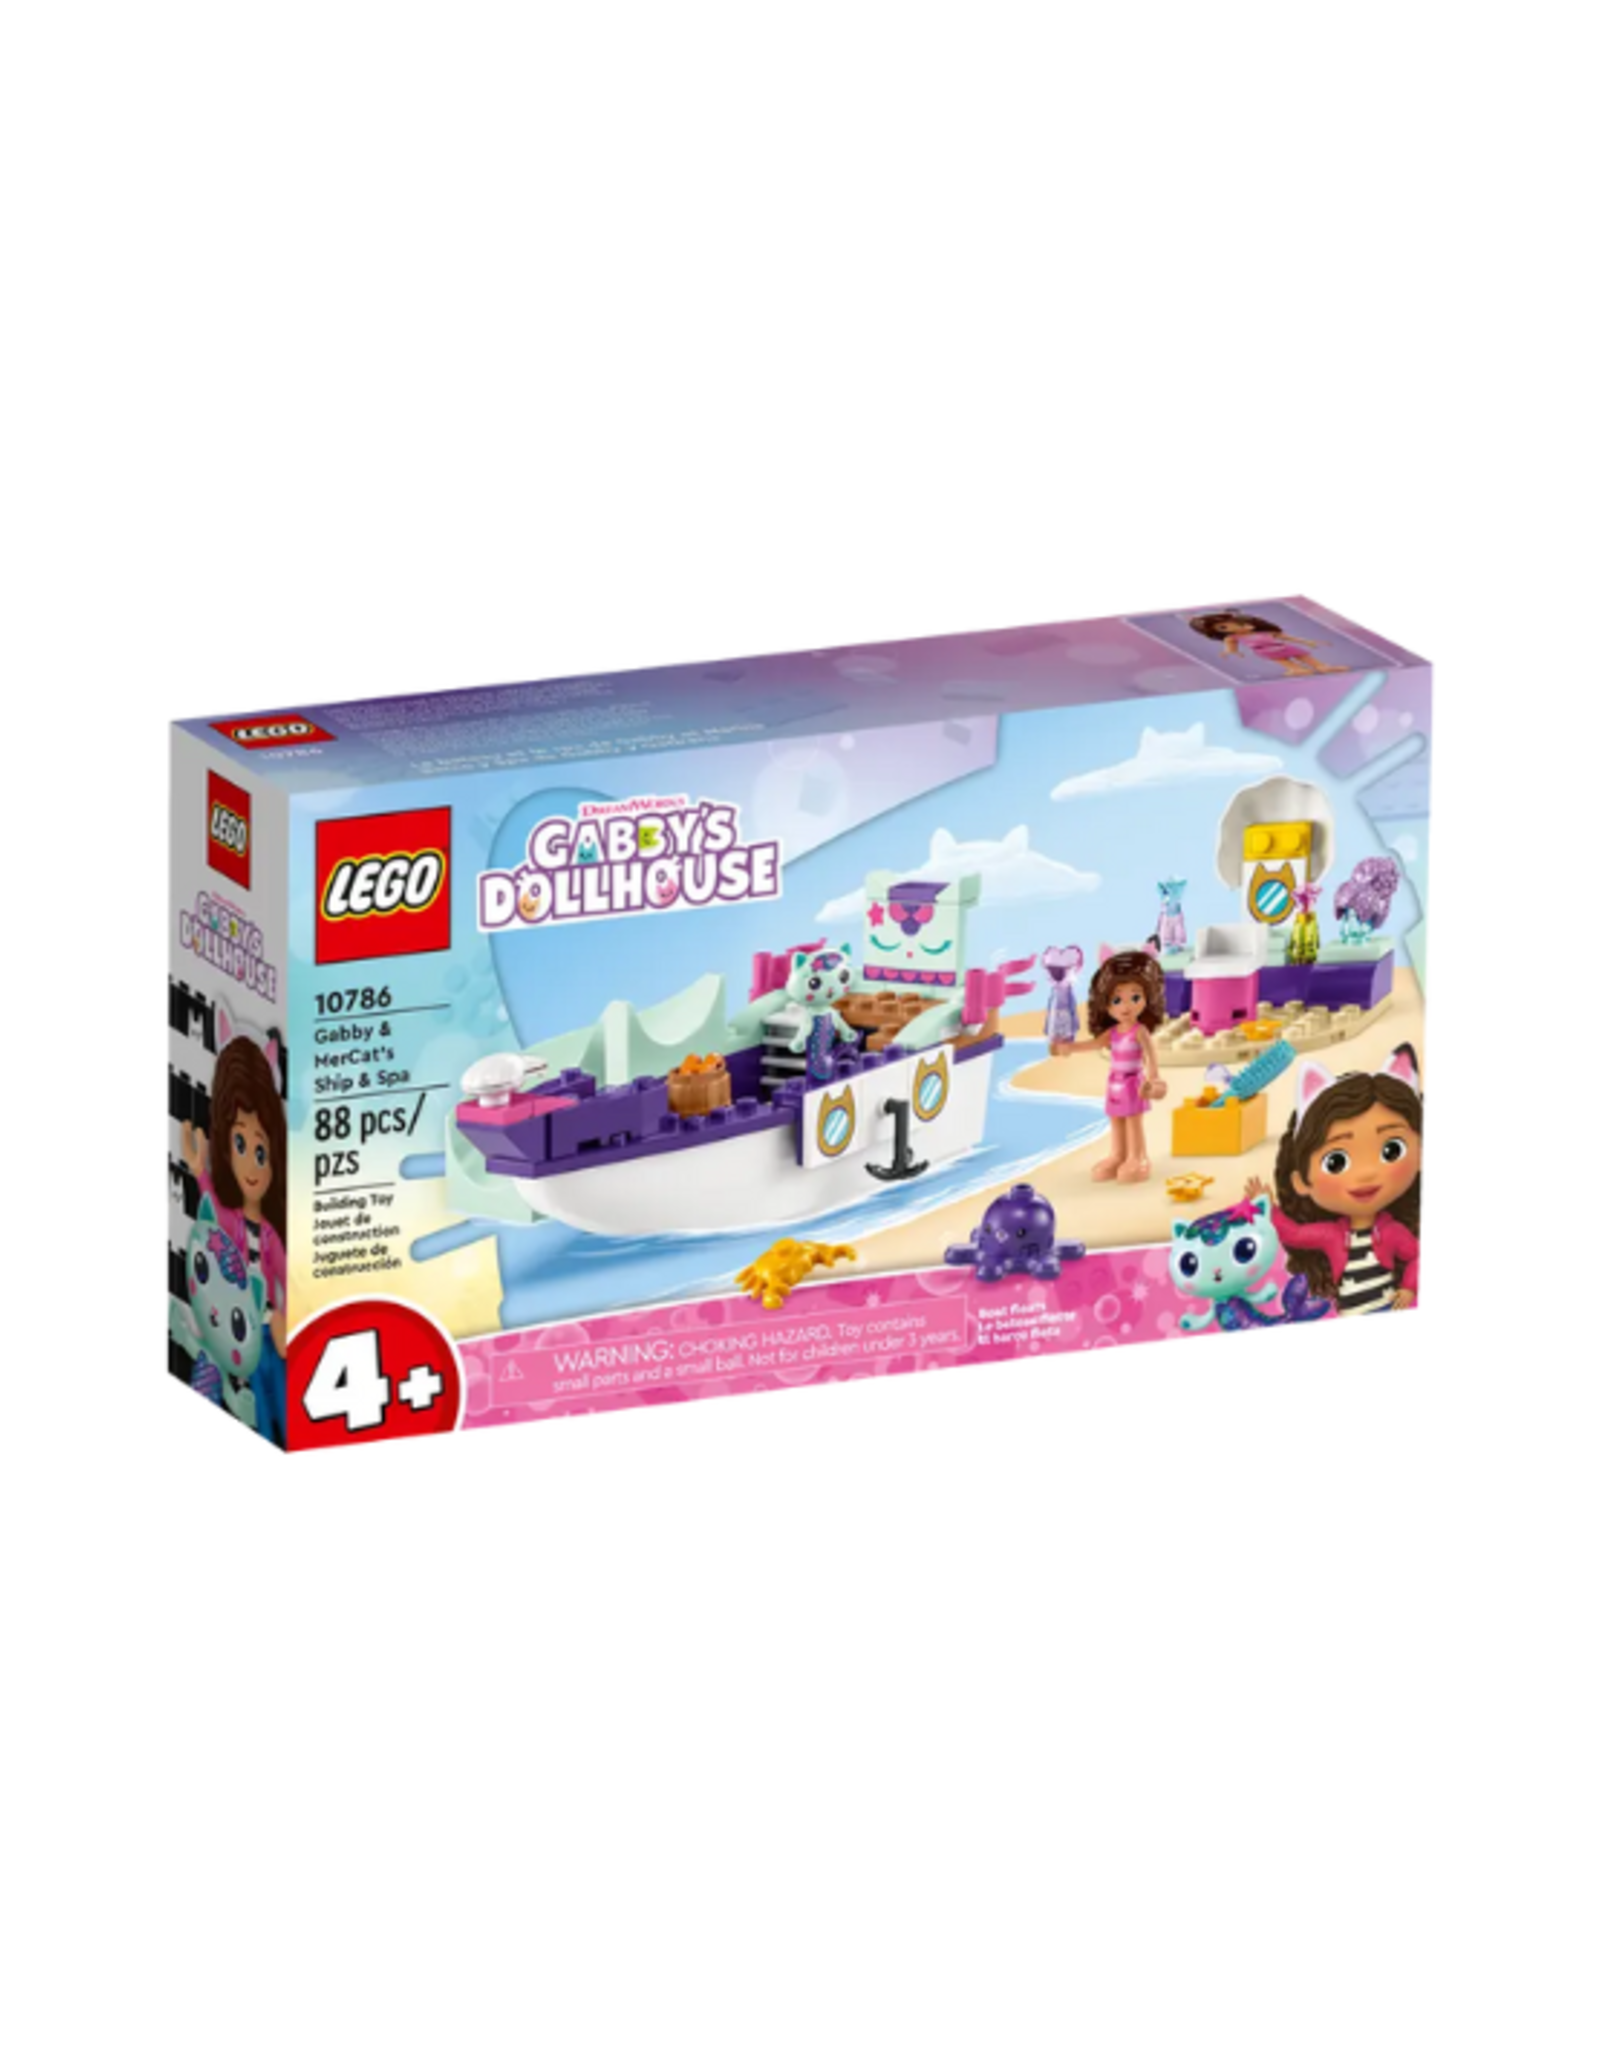 Lego Lego - Gabby's Dollhouse - 10786 - Gabby & MerCat's Ship & Spa